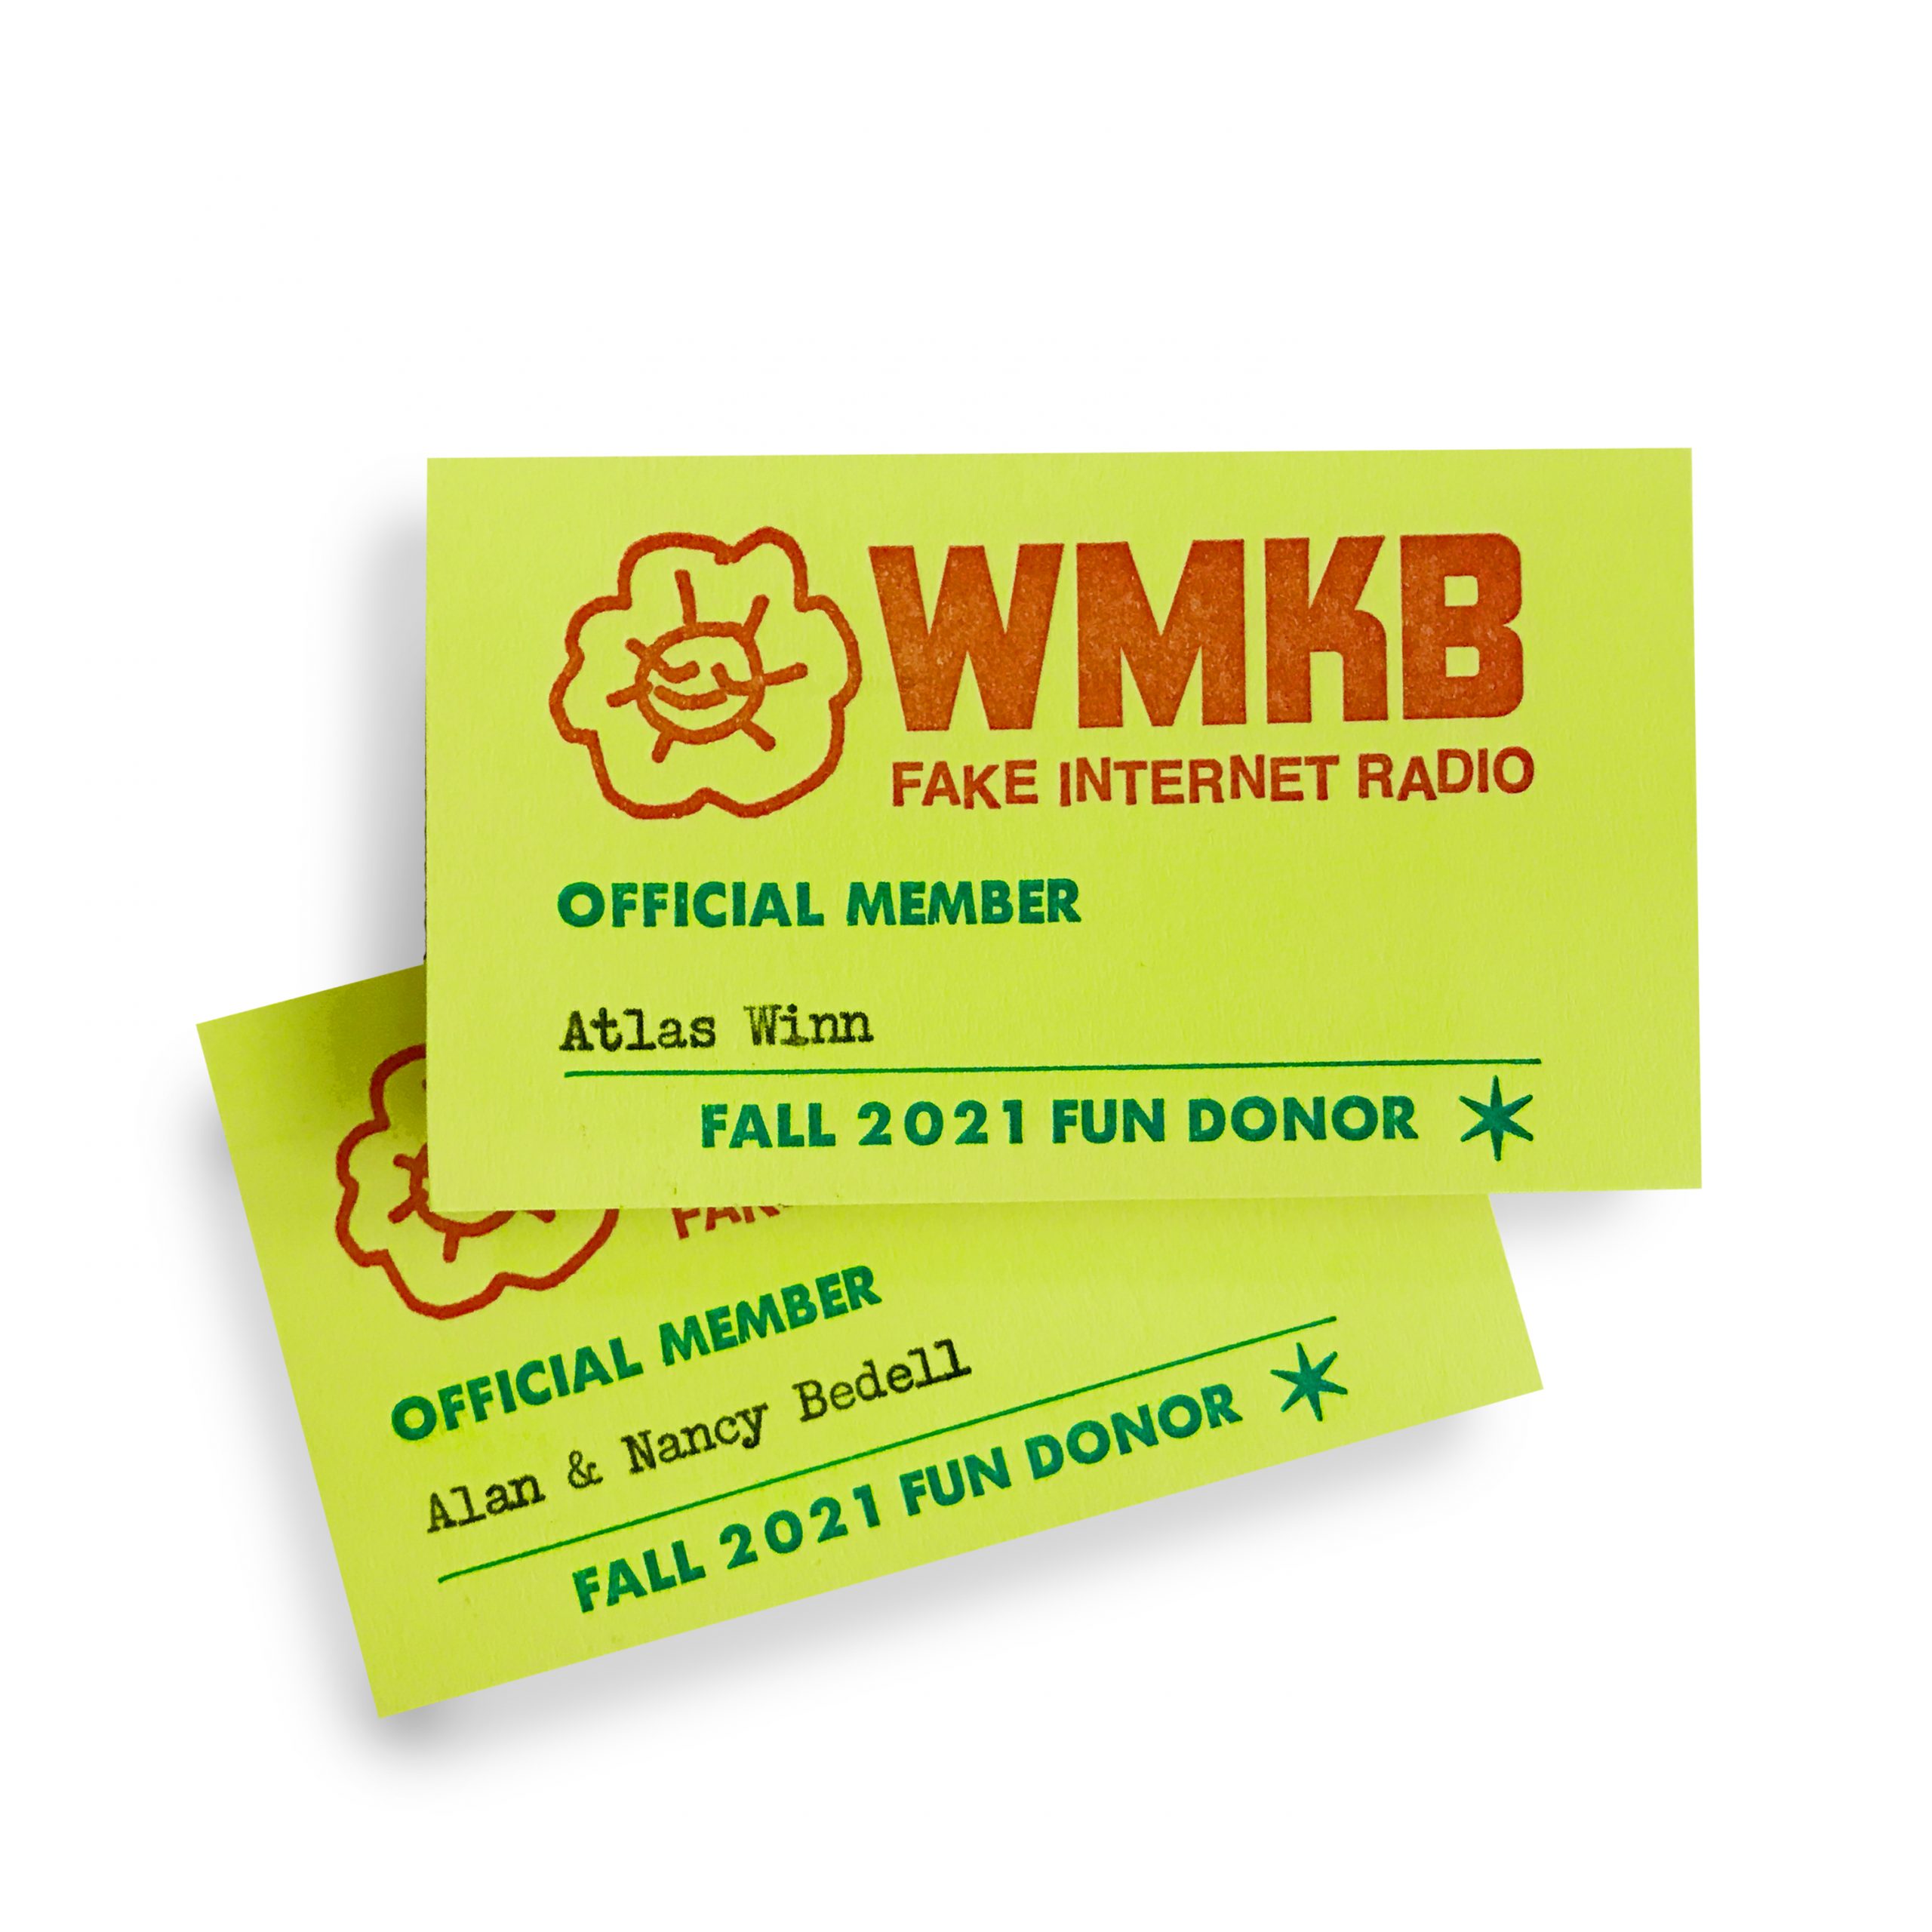 WMKB Membership cards